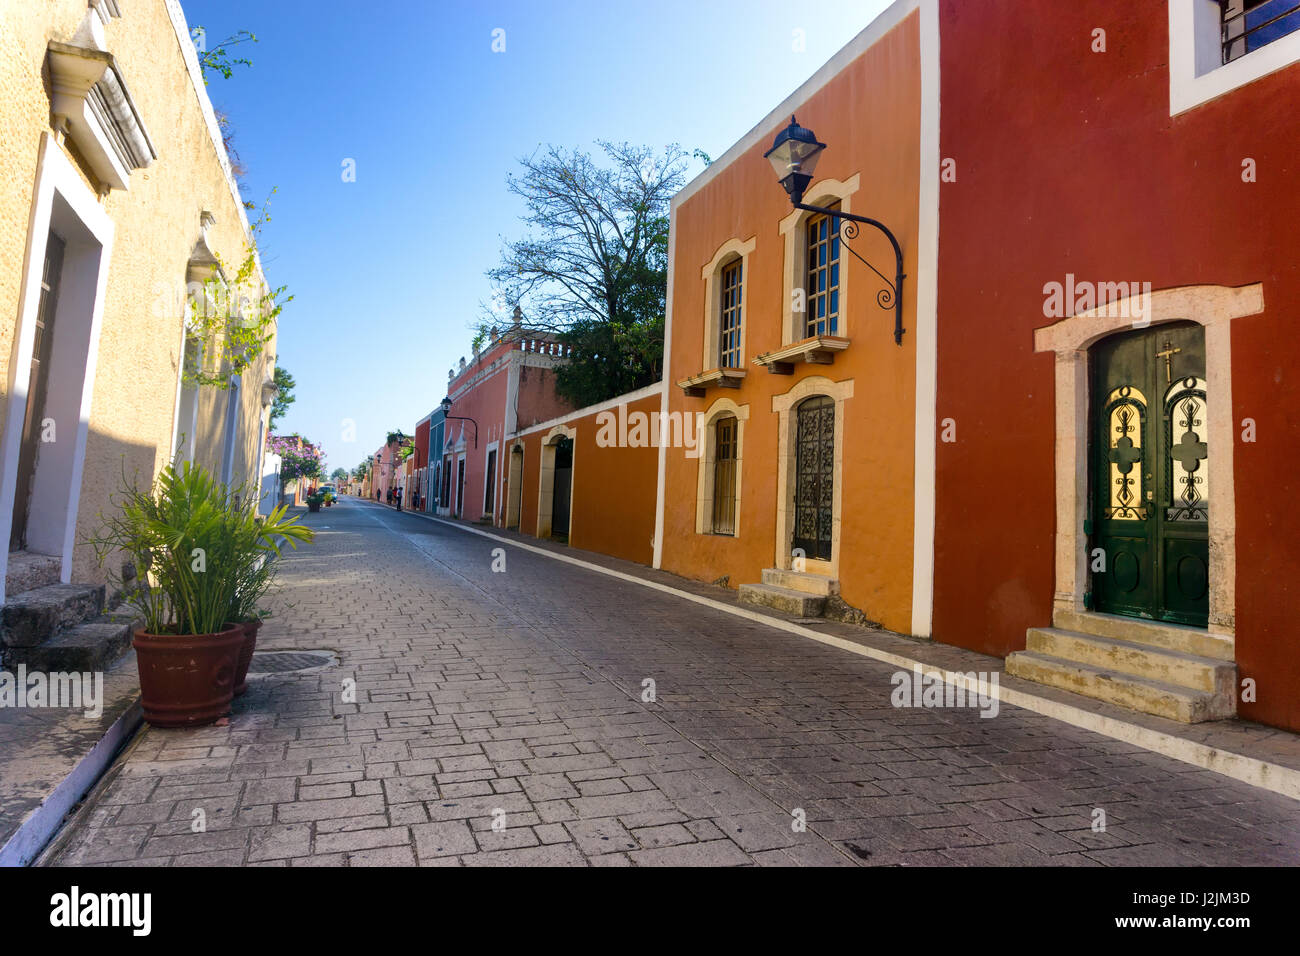 Rue bordée de bâtiments coloniaux colorés dans Vallodlid, Mexique Banque D'Images